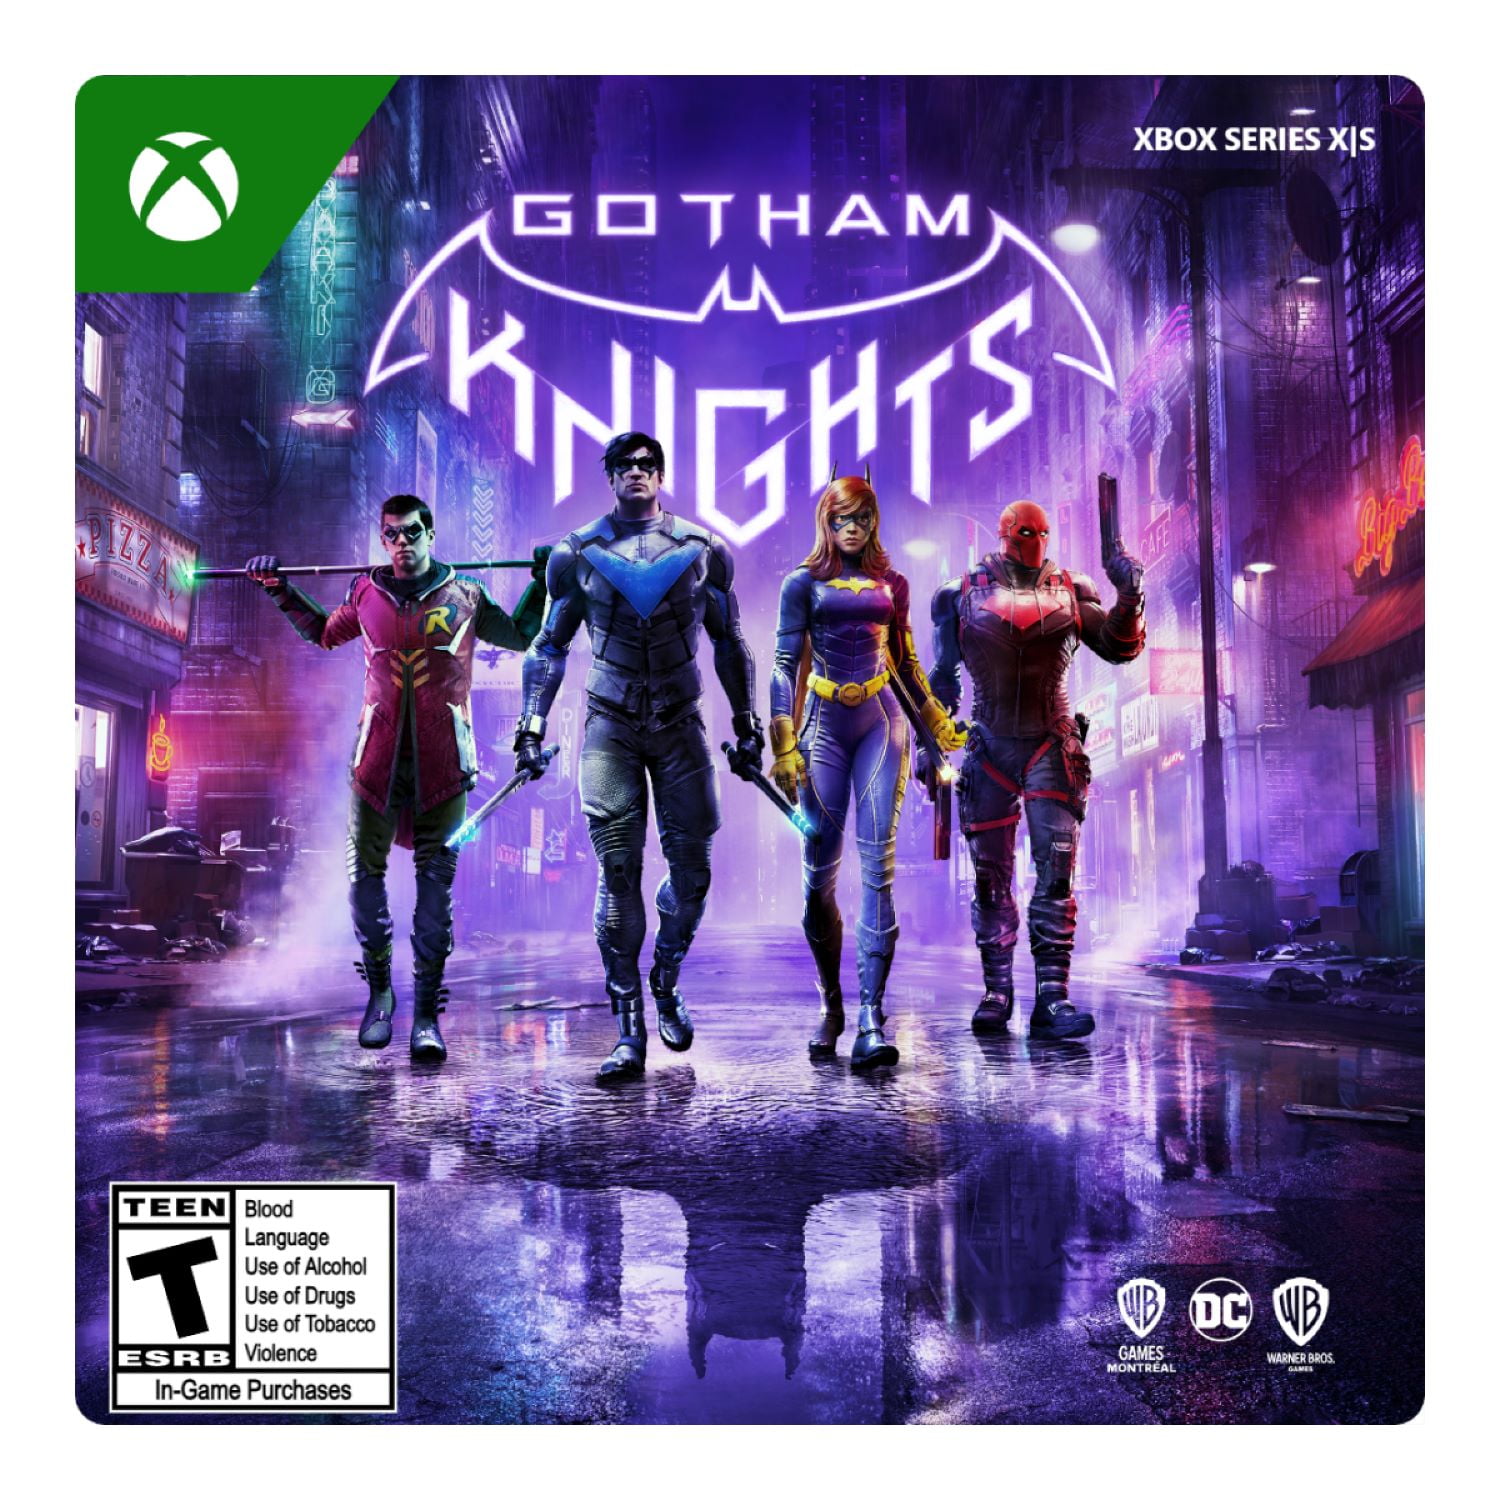 Gotham Knights - PlayStation 5 